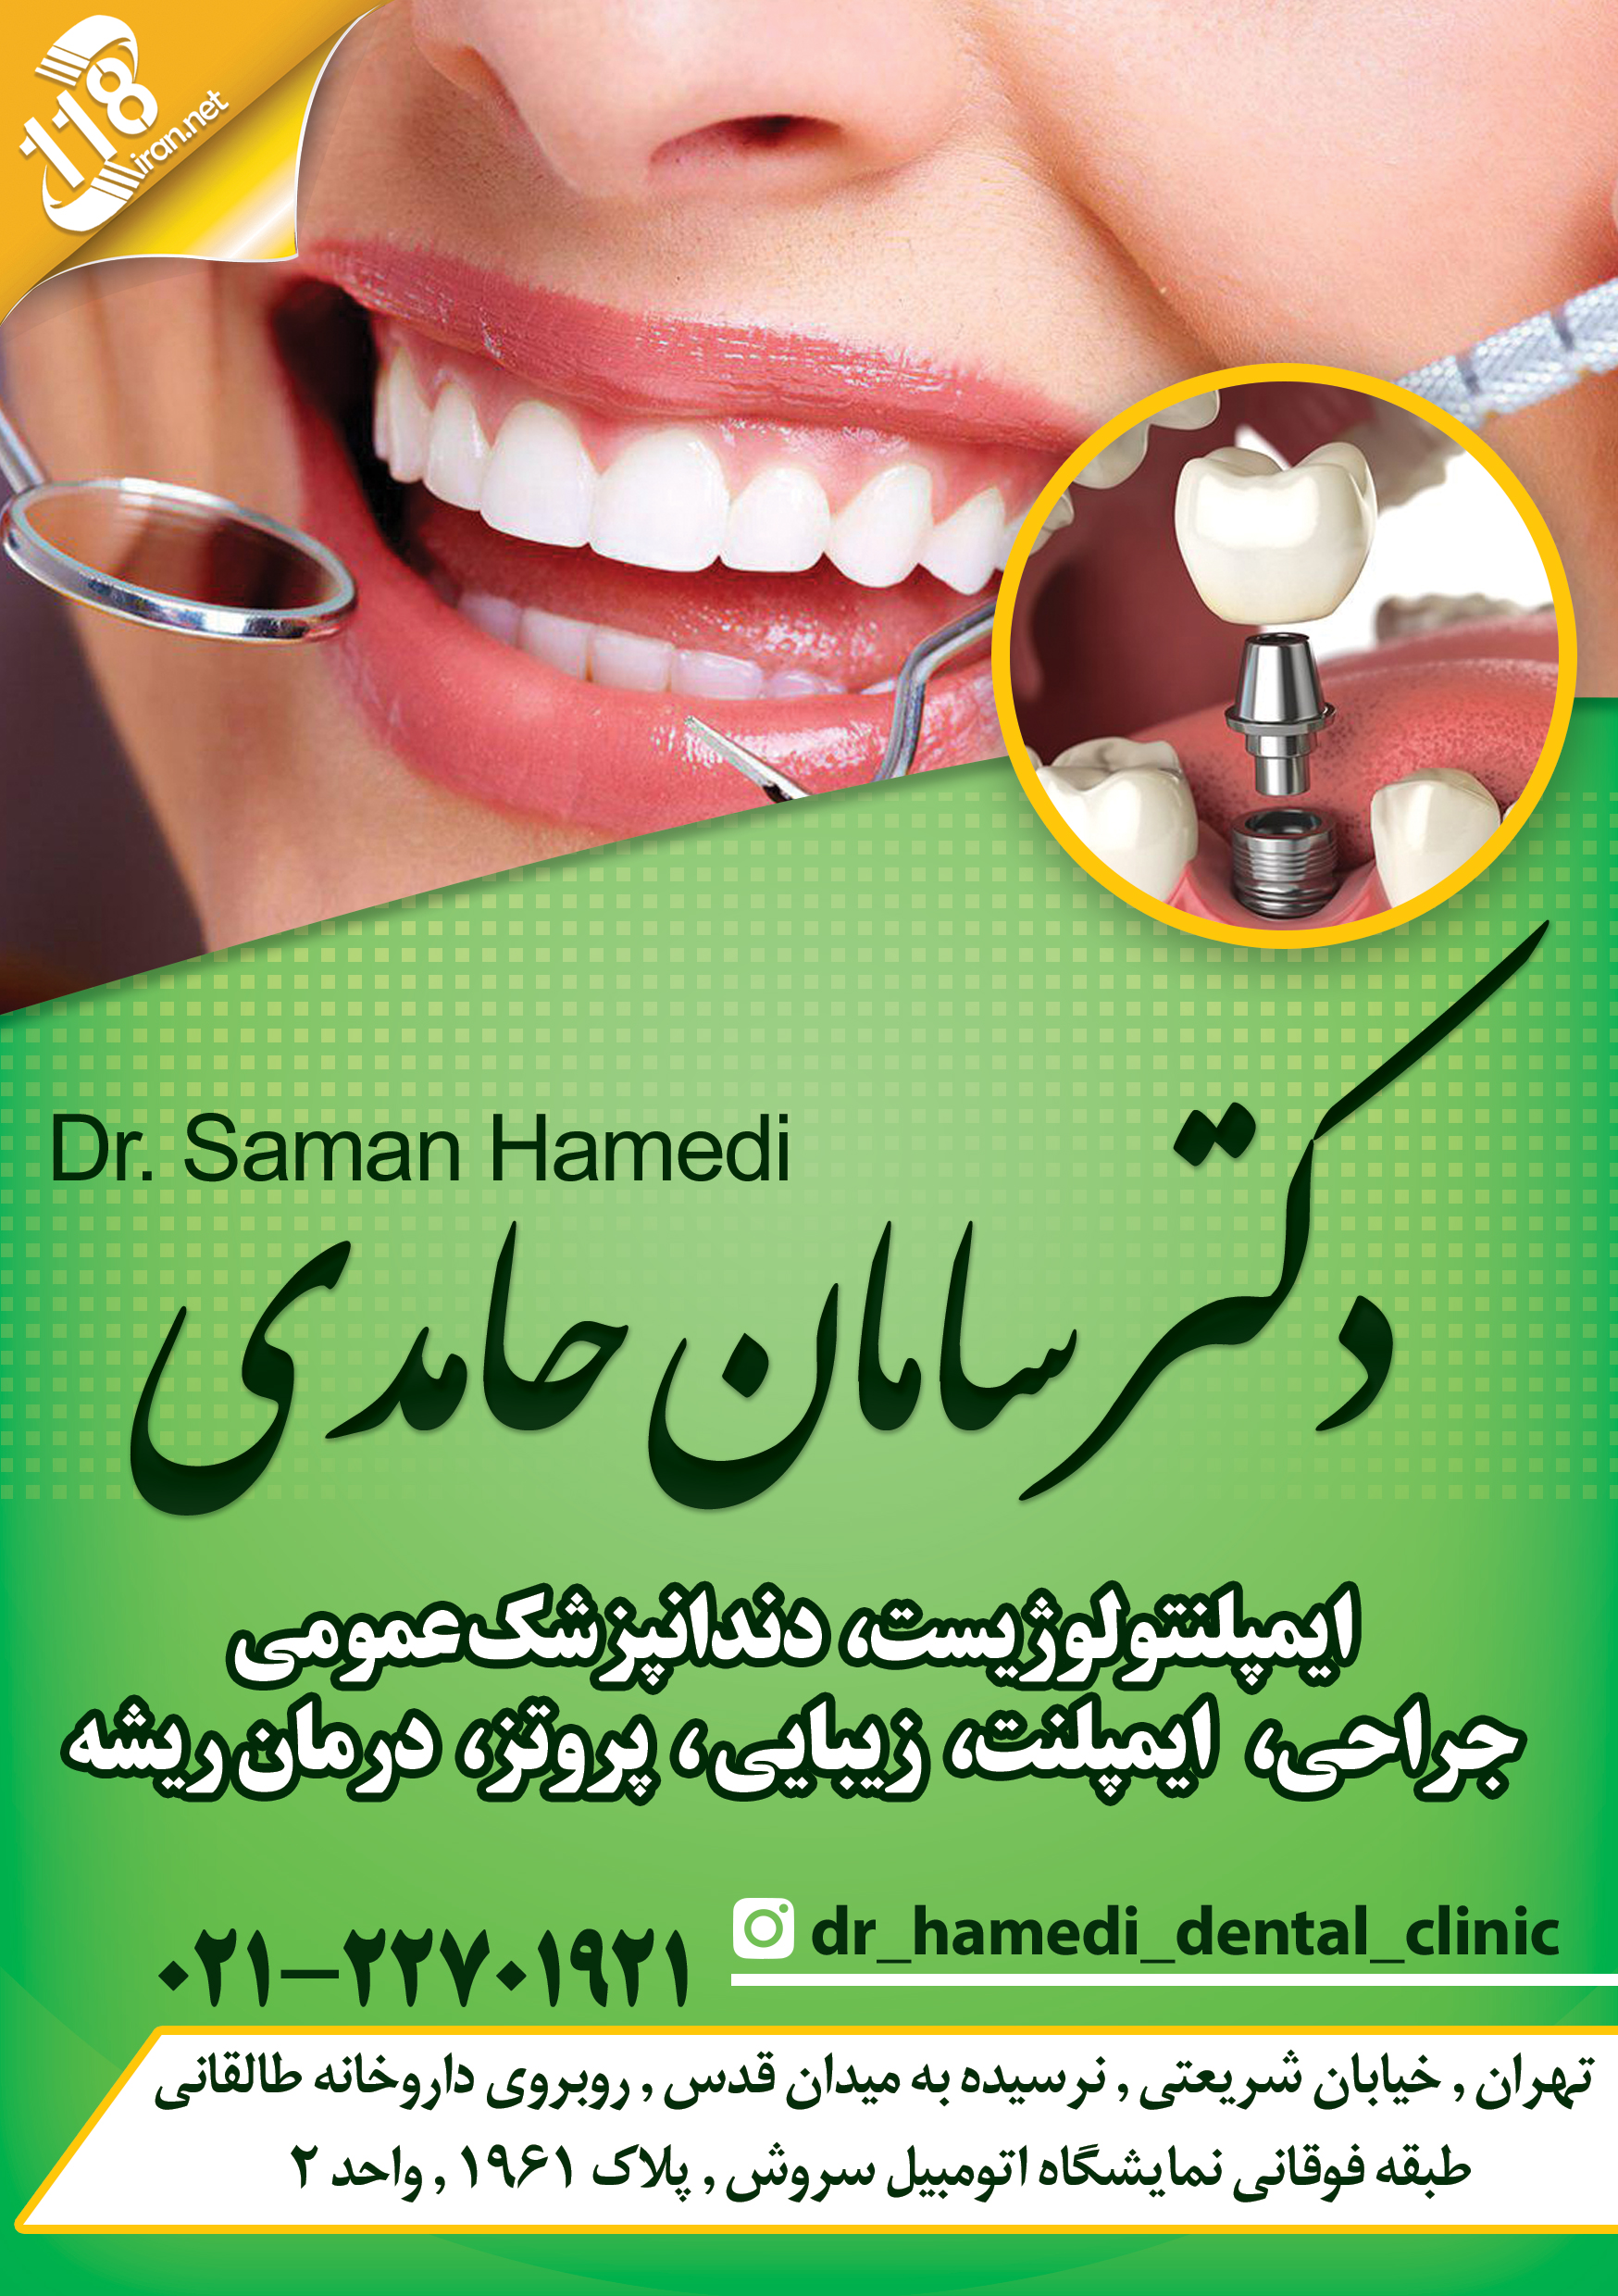  دکتر سامان حامدی در تهران 